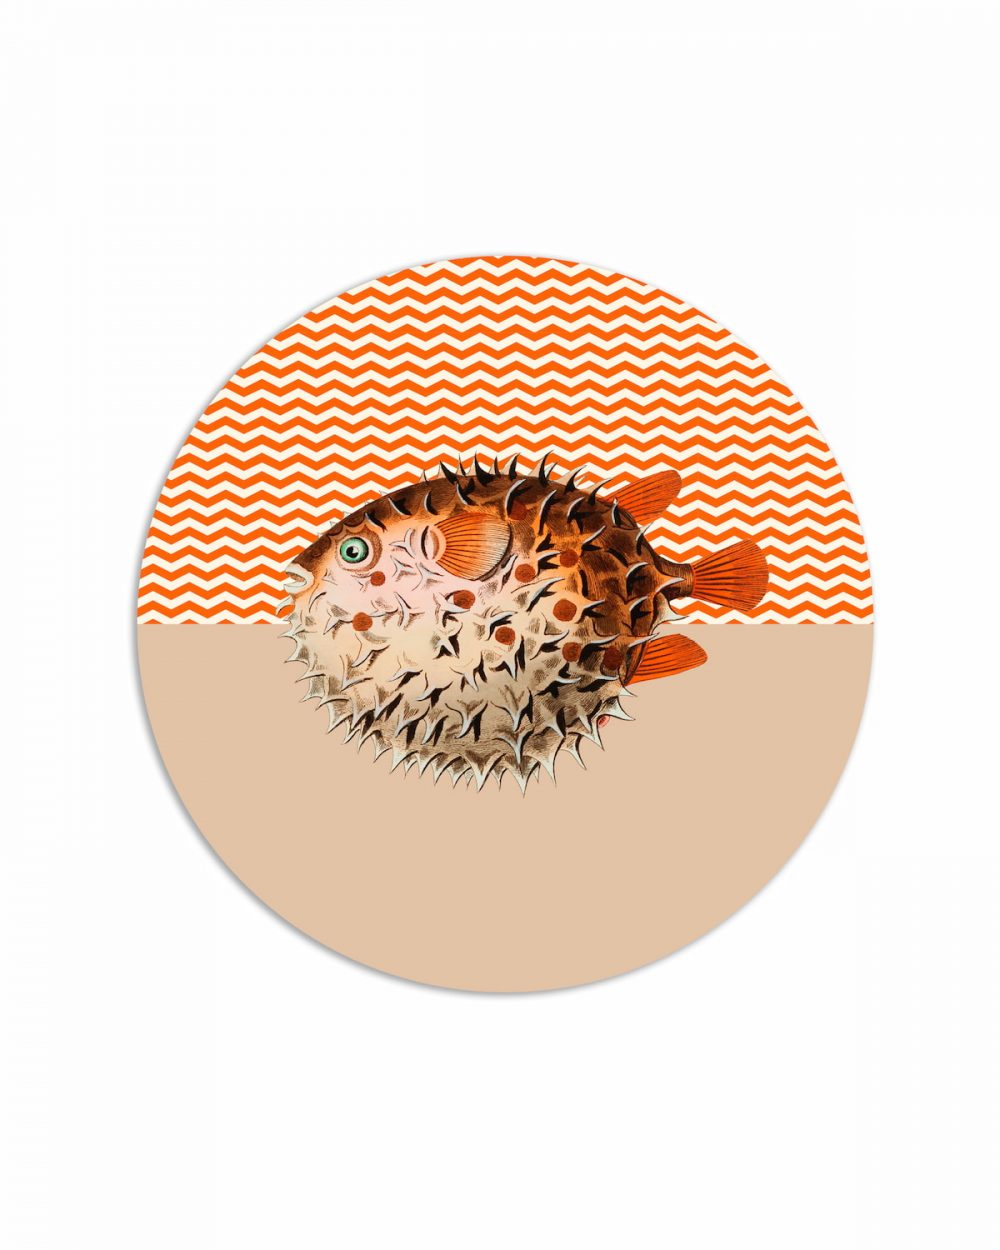 tovaglietta tonda pesce palla grafica zig zag bianca e arancione